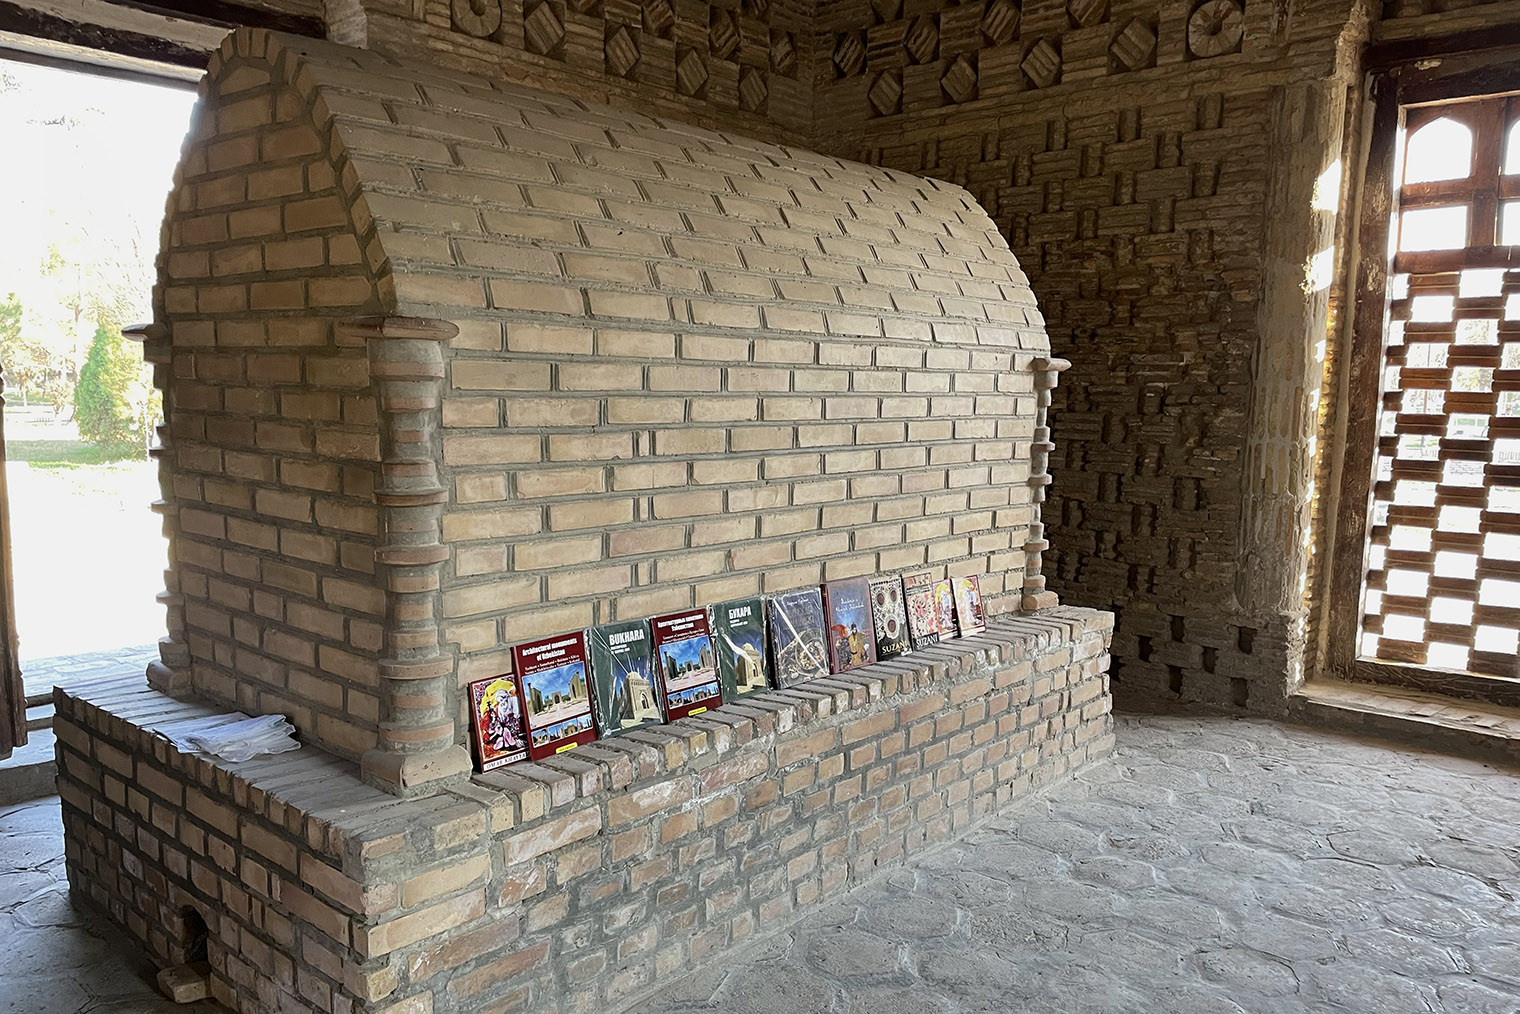 Продавцы сувенирных книг используют кирпичное надгробие как полку. Фотография: Мария Рудницкая